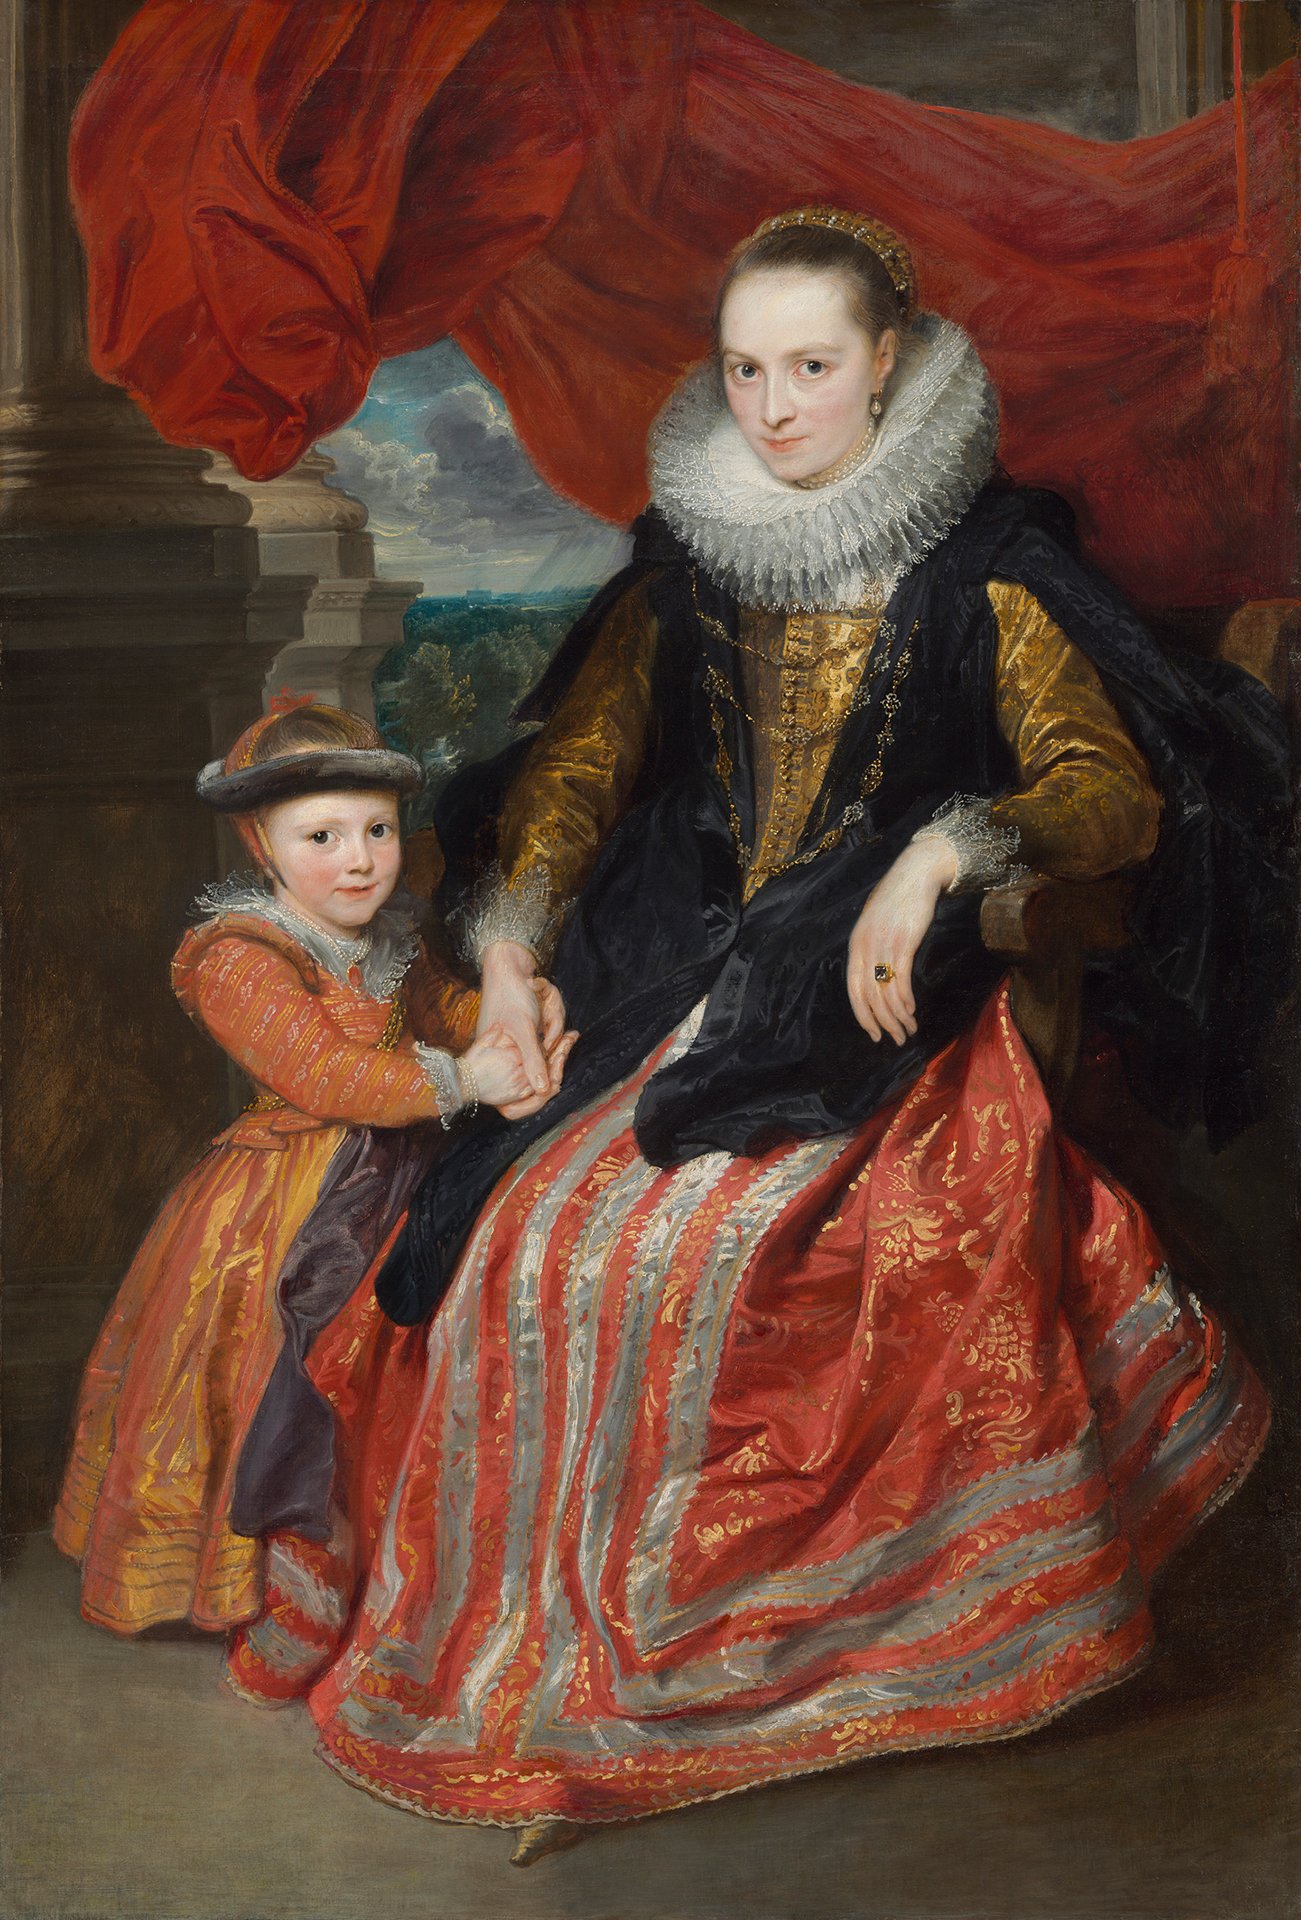 Abbildung des Werks "Susanna Fourment und ihre Tochter" von Anthonis van Dyck aus dem Jahr 1621. Die Frau sitzt und trägt ein aufwendiges Kleid und eine Halskrause. Ihr Kind steht neben ihr und hält ihre Hand.